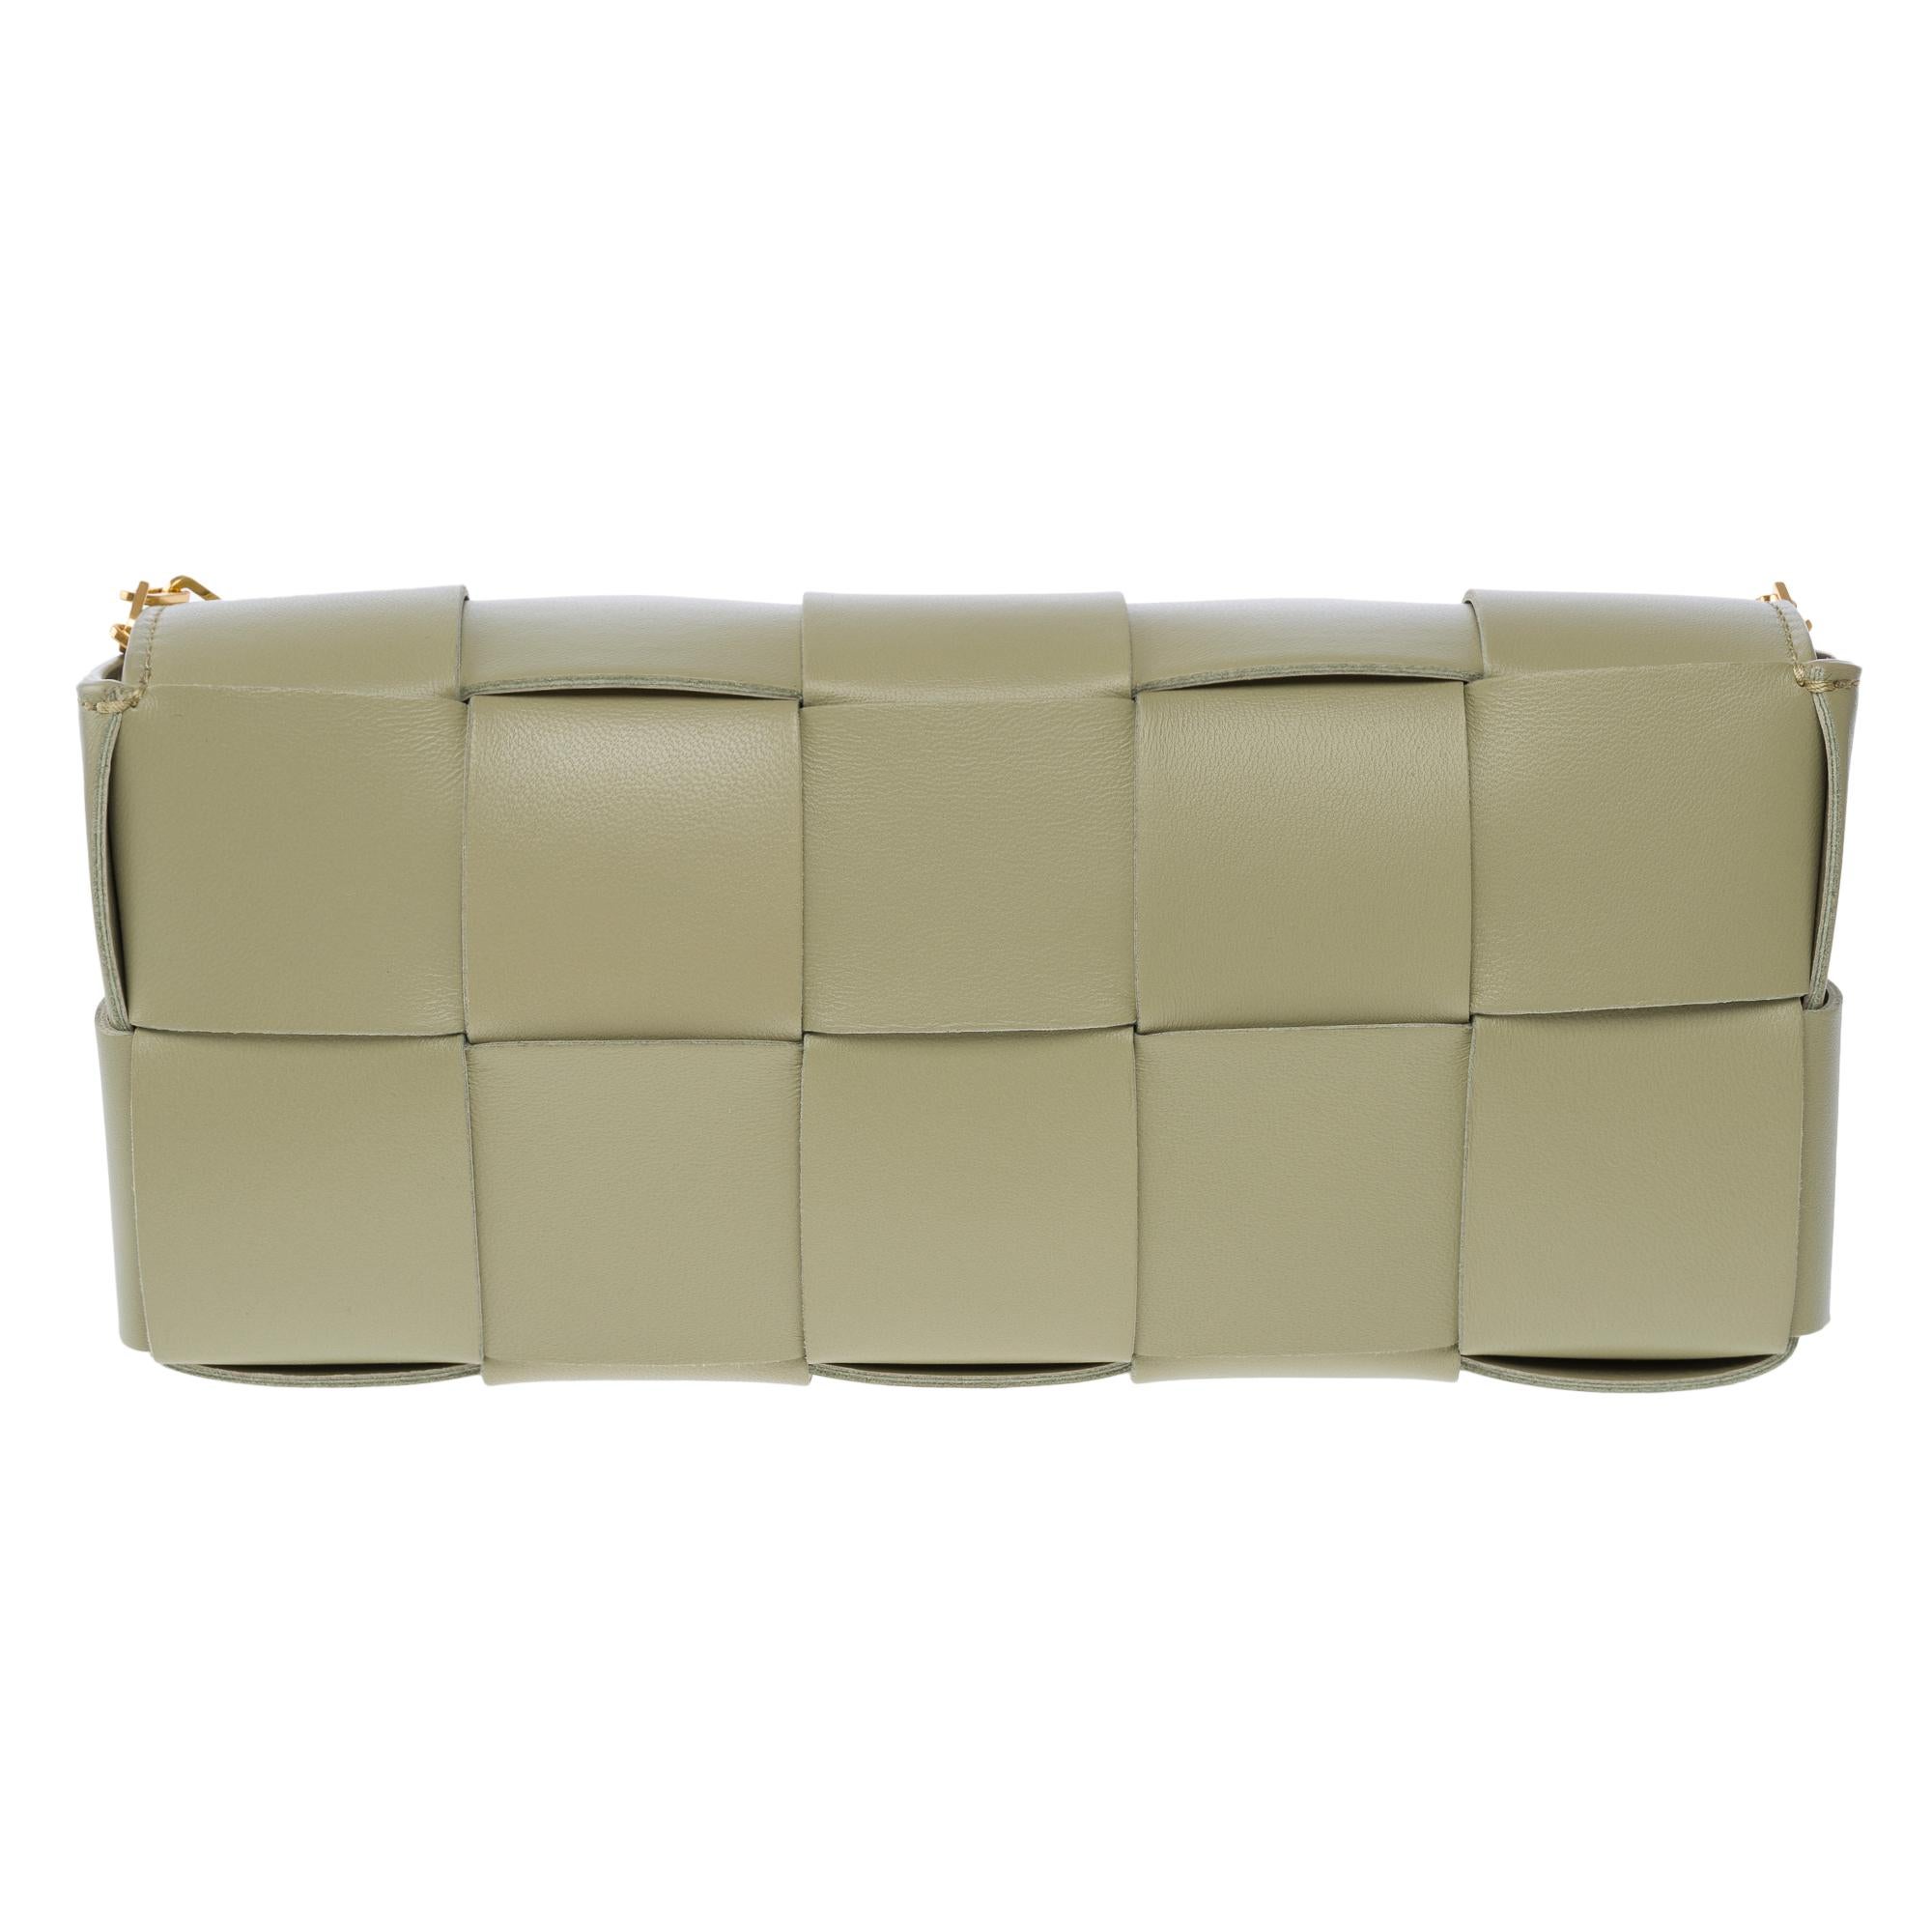 Bottega Veneta Cassette 23 shoulder bag in green lambskin leather, GHW For Sale 1